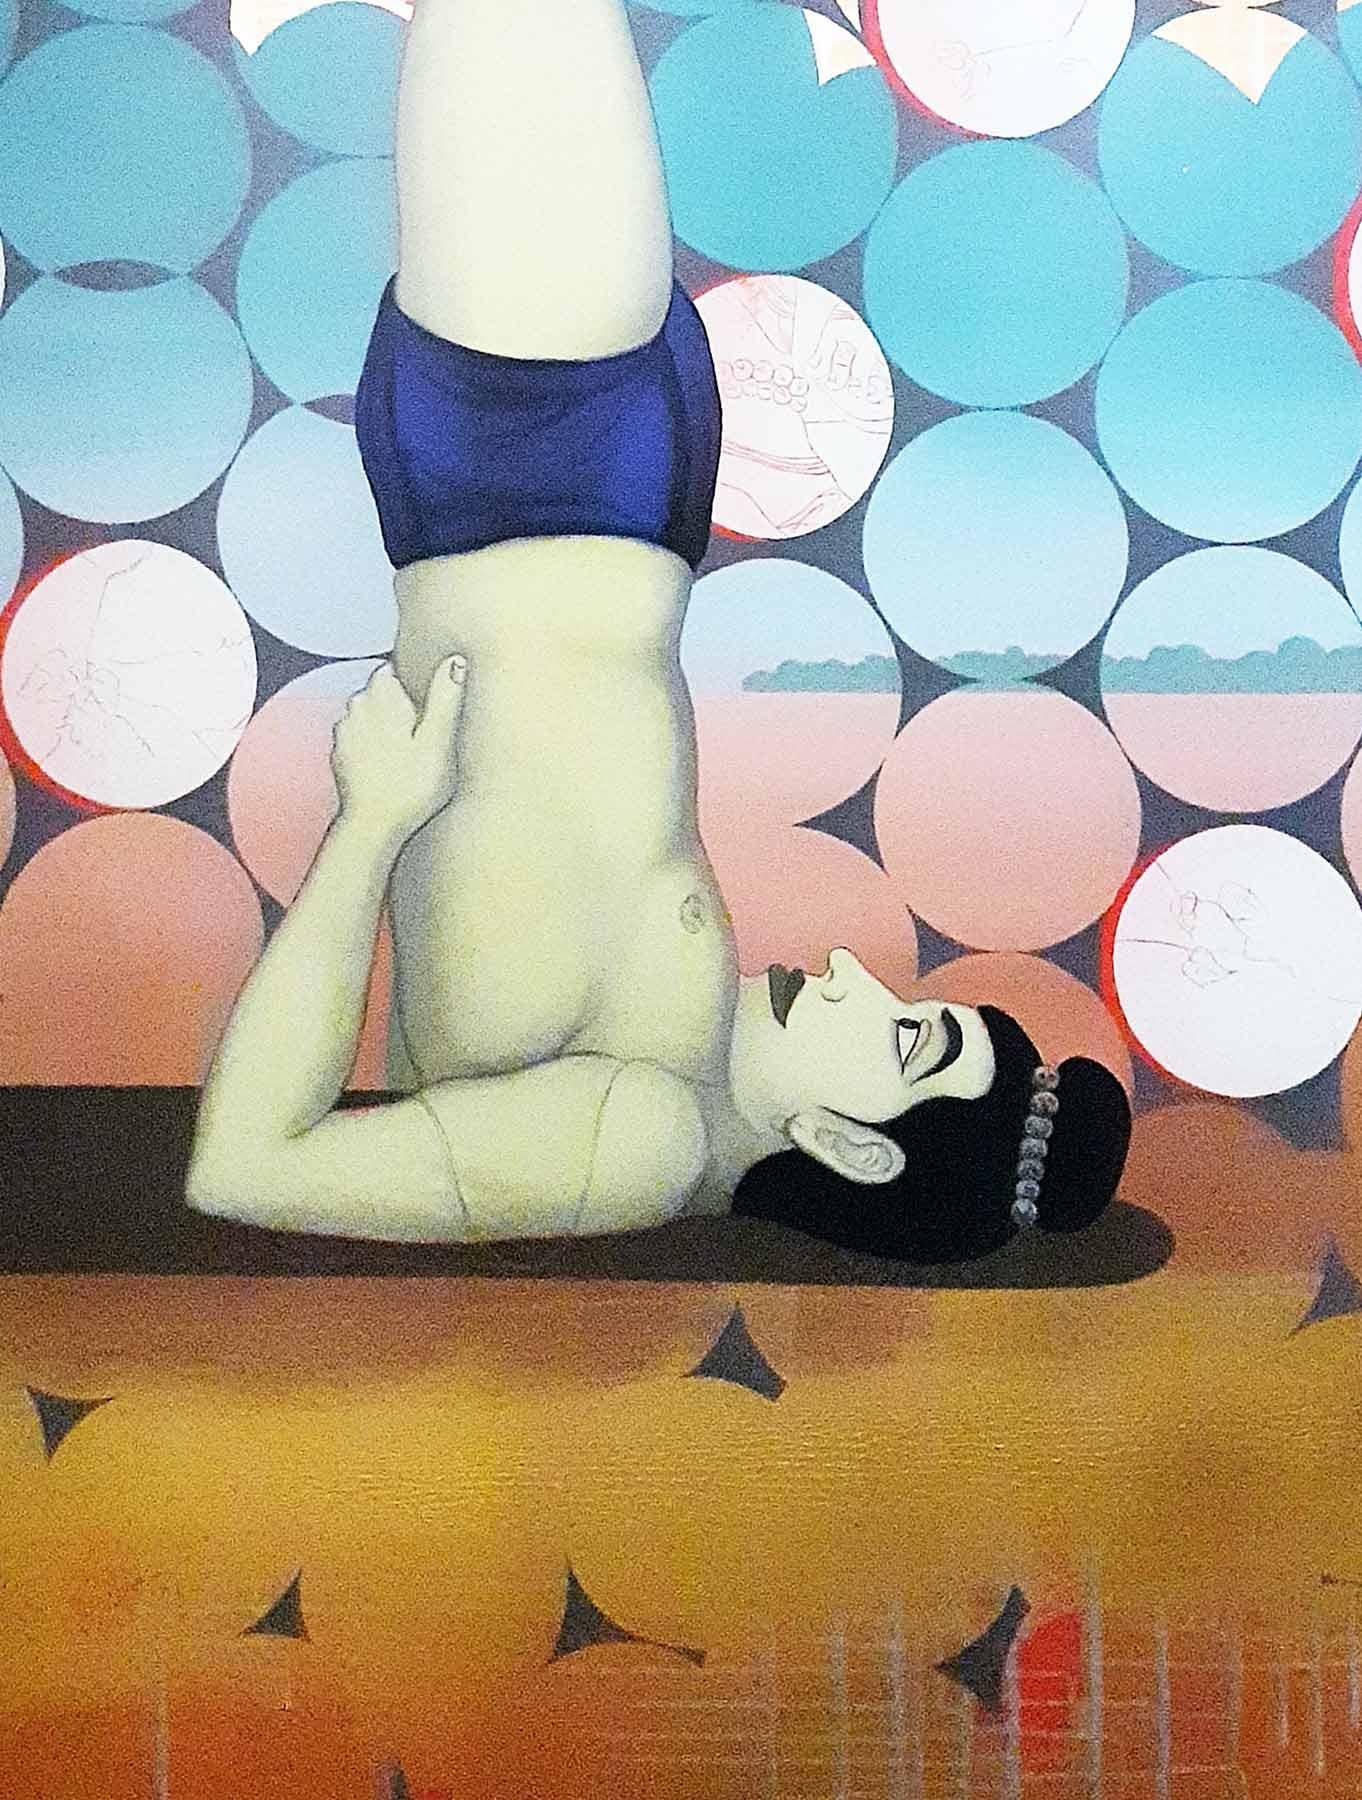 Zeitgenössischer indischer Künstler „In Stock“, Acryl auf Leinwand, Vision der Vision – Painting von Birendra Pani